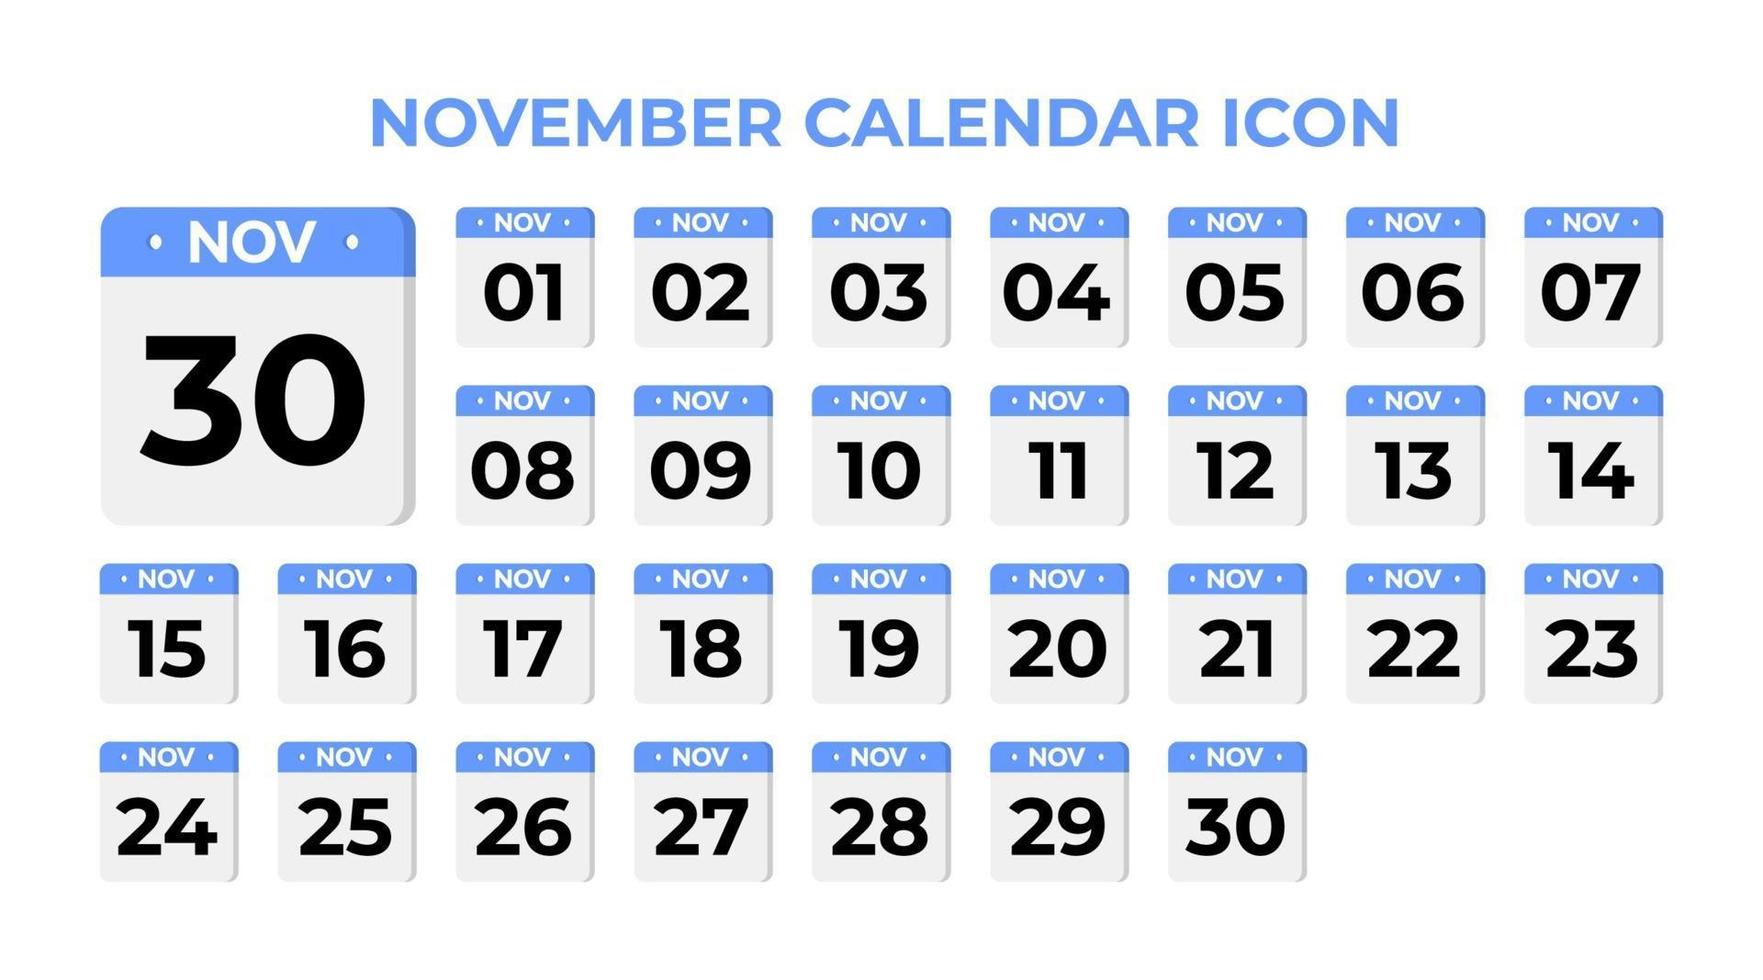 November calendar icon, set on blue vector